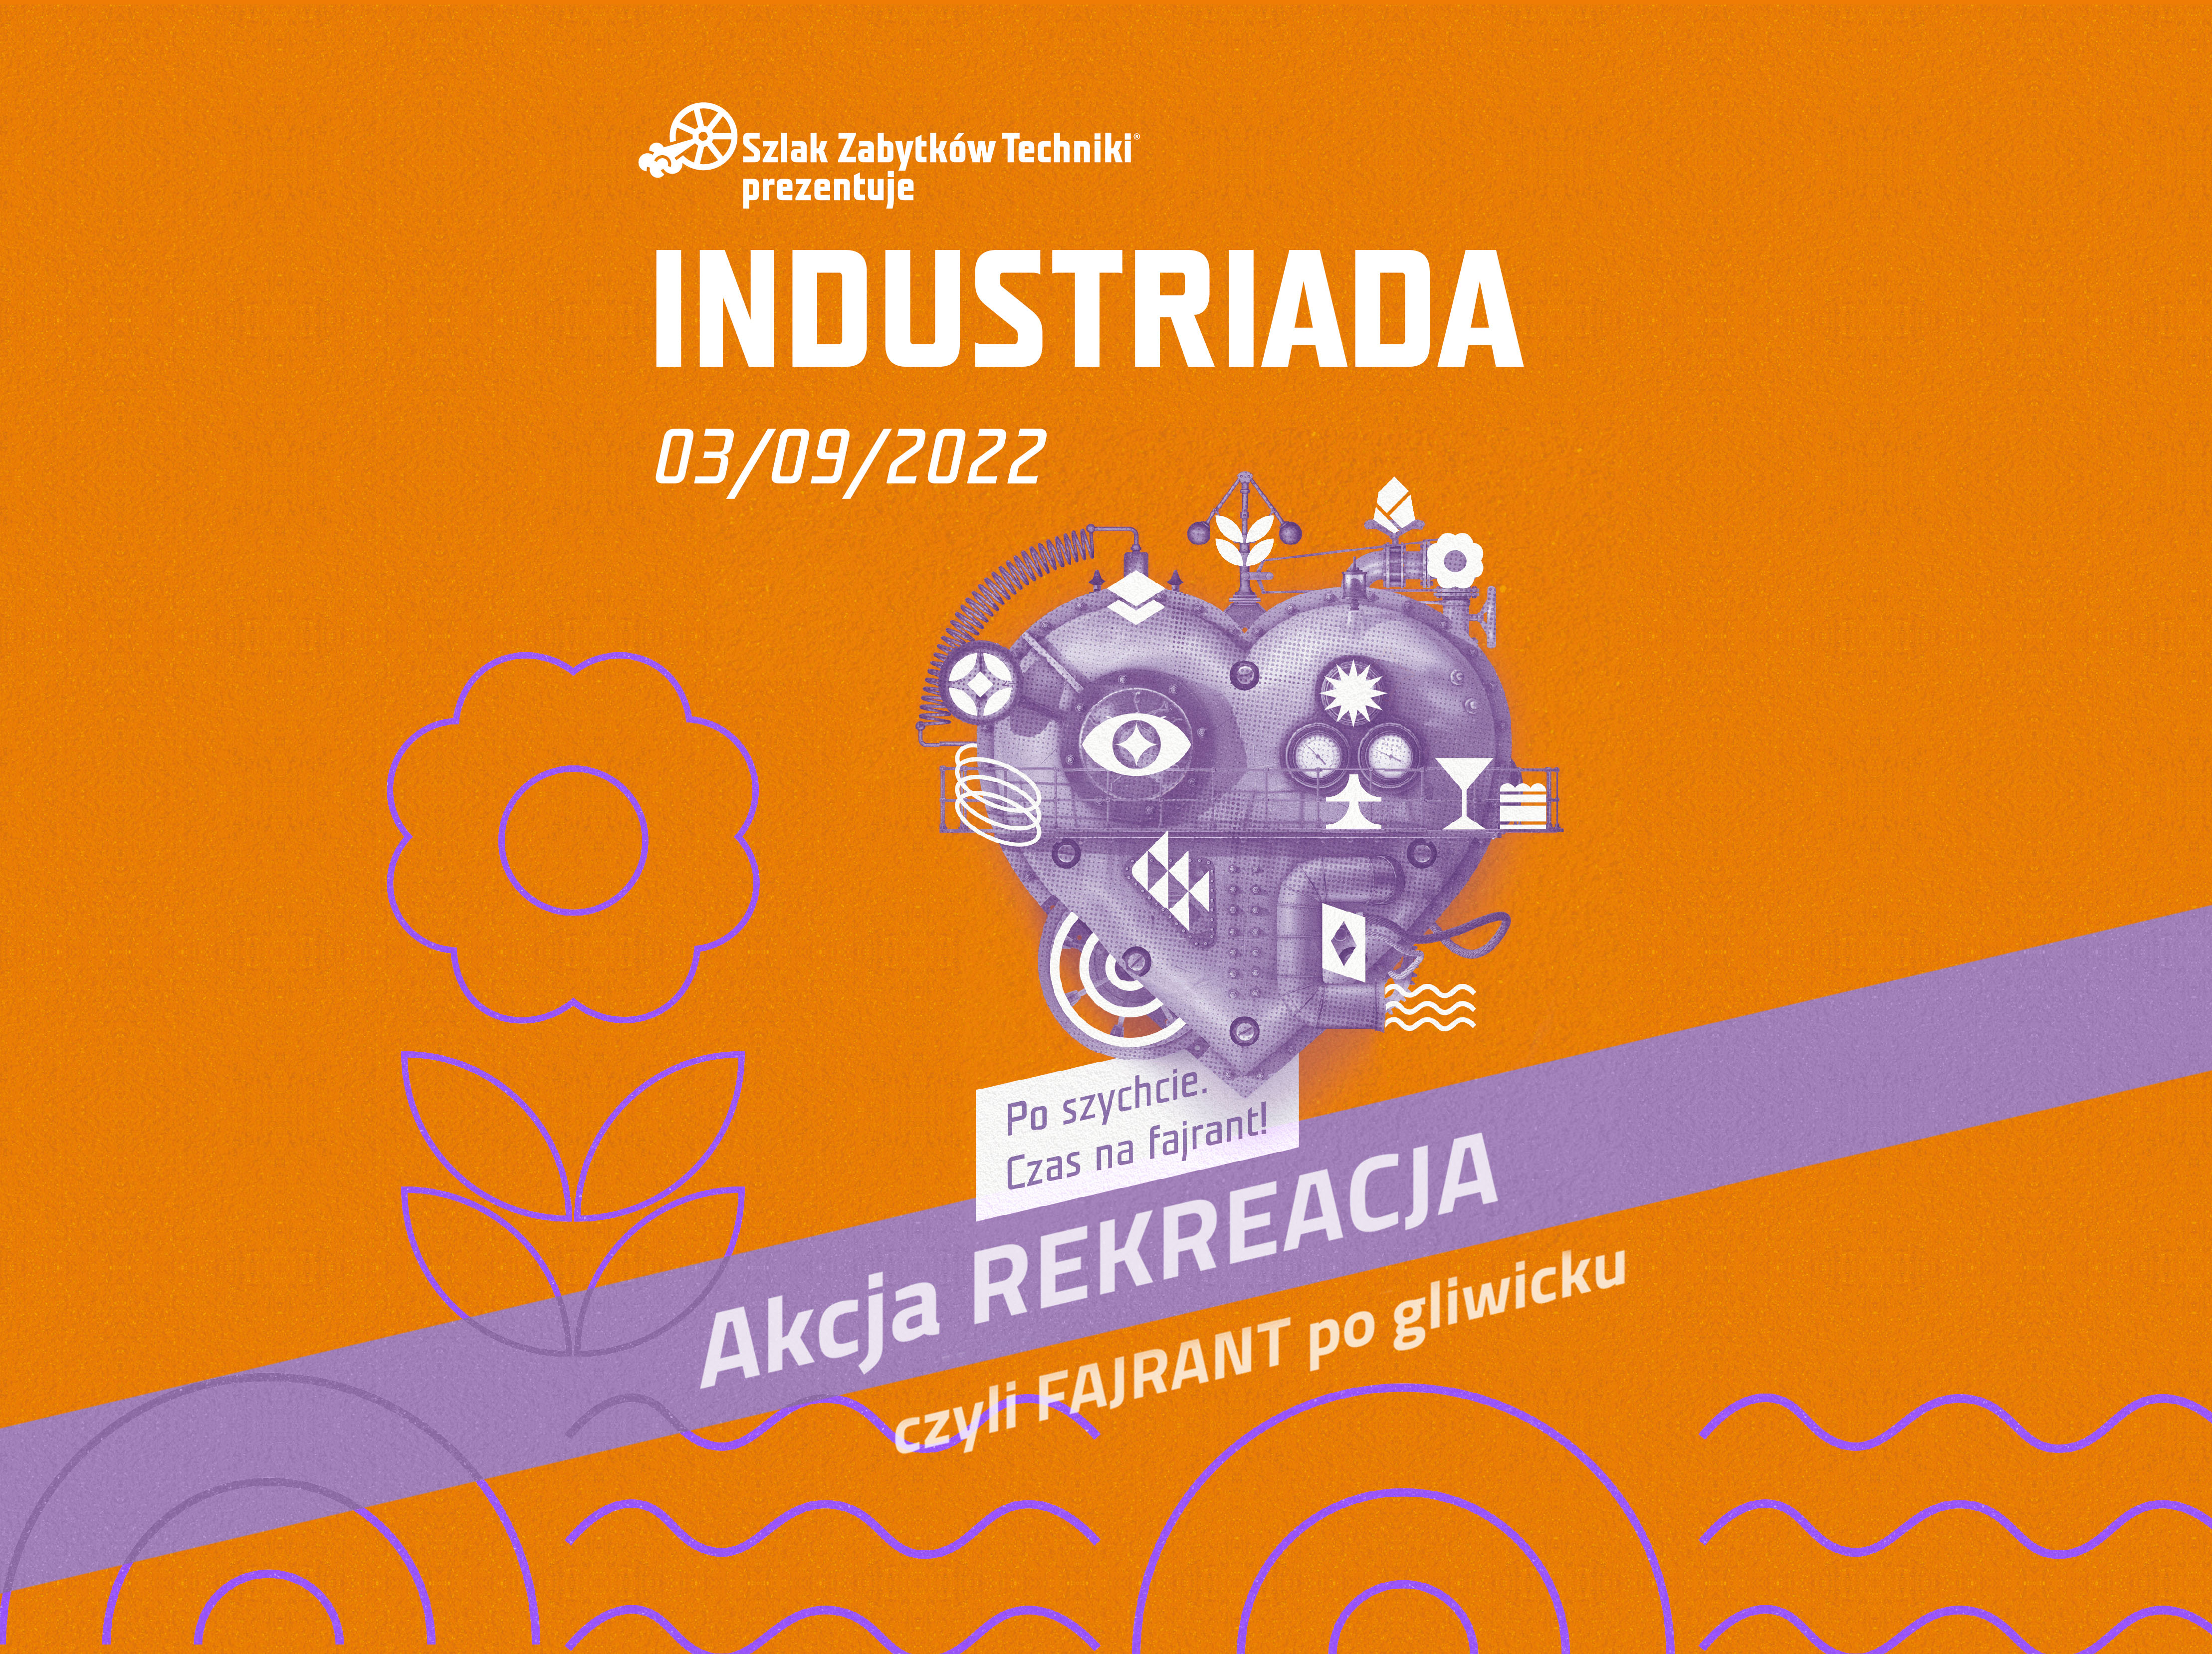 #Industriada2022: AKCJA REKREACJA, czyli industriadowy fajrant po gliwicku! 